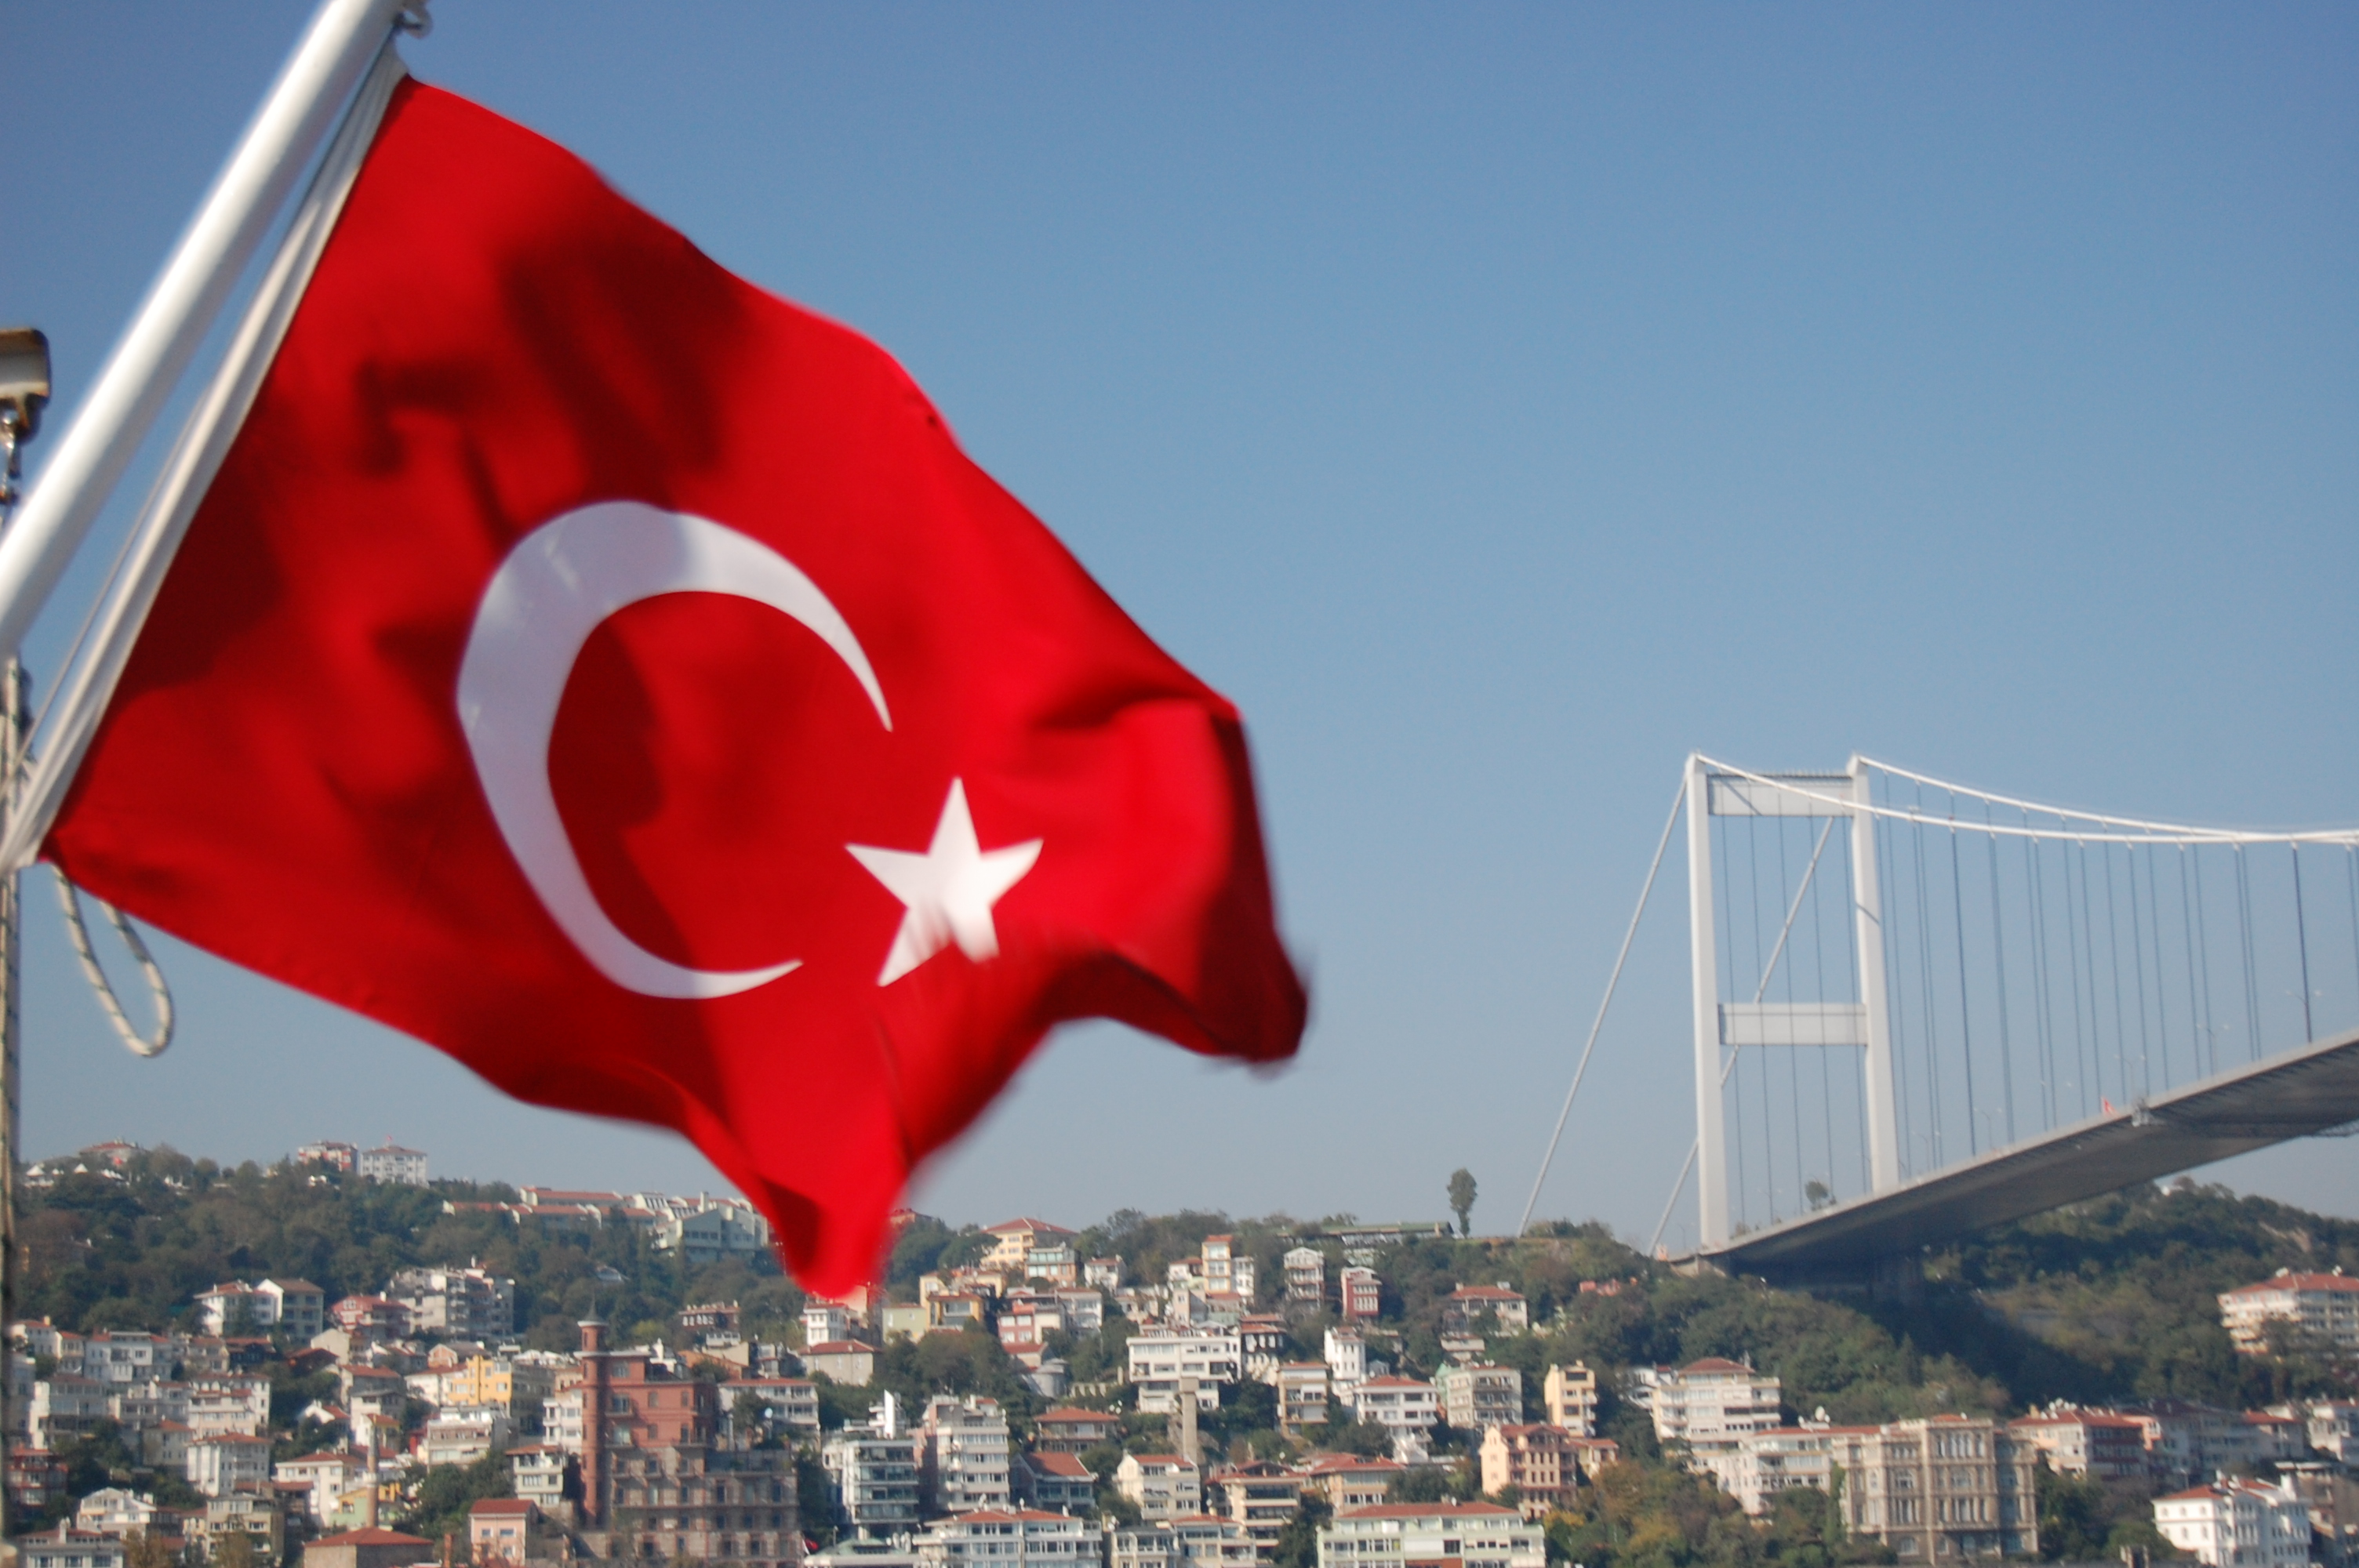 صور علم تركيا , مجموعة من الصور لعلم تركيا كيوت